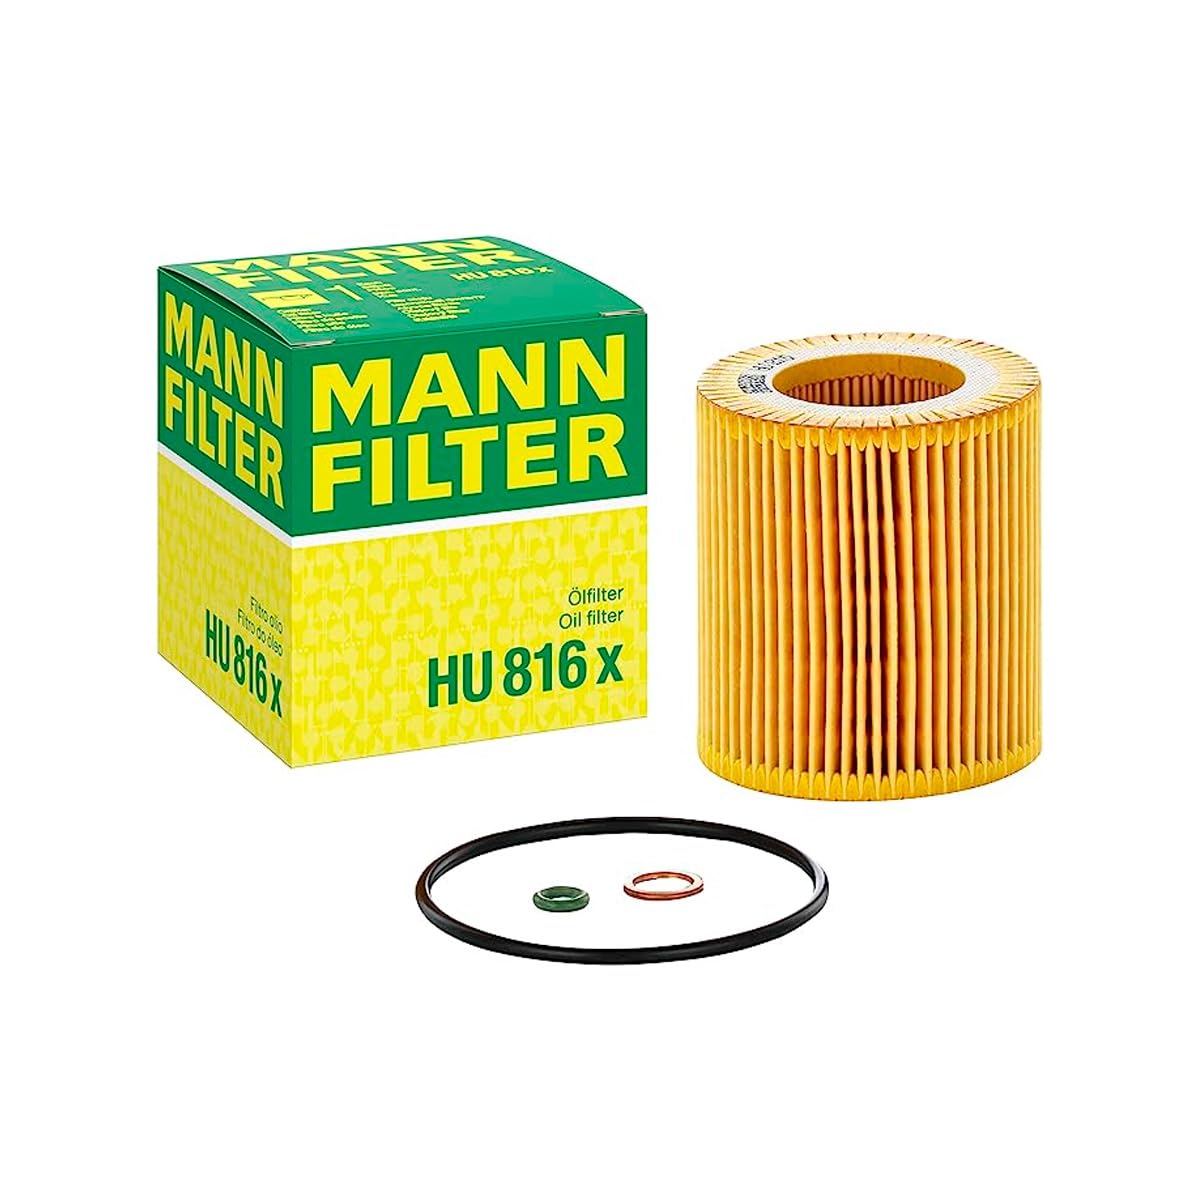 MANN-FILTER HU 816 X Ölfilter – Ölfilter Satz mit Dichtung/Dichtungssatz – Für PKW von MANN-FILTER